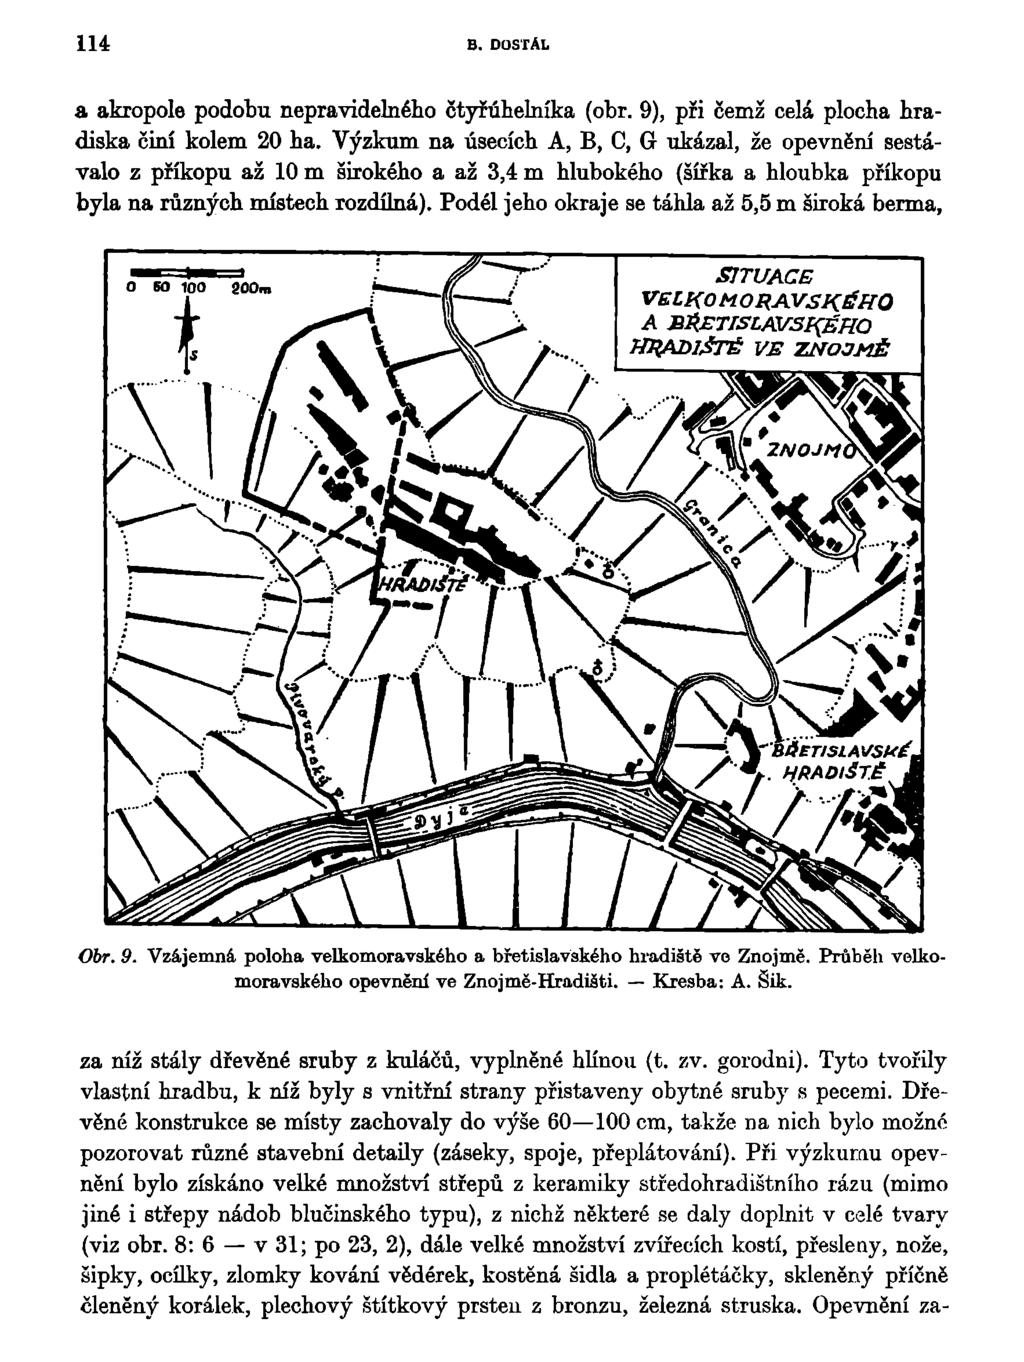 114 B. DOSTÁL a akropole podobu nepravidelného čtyřúhelníka (obr. 9), při čemž celá plocha hradiska činí kolem 20 ha.